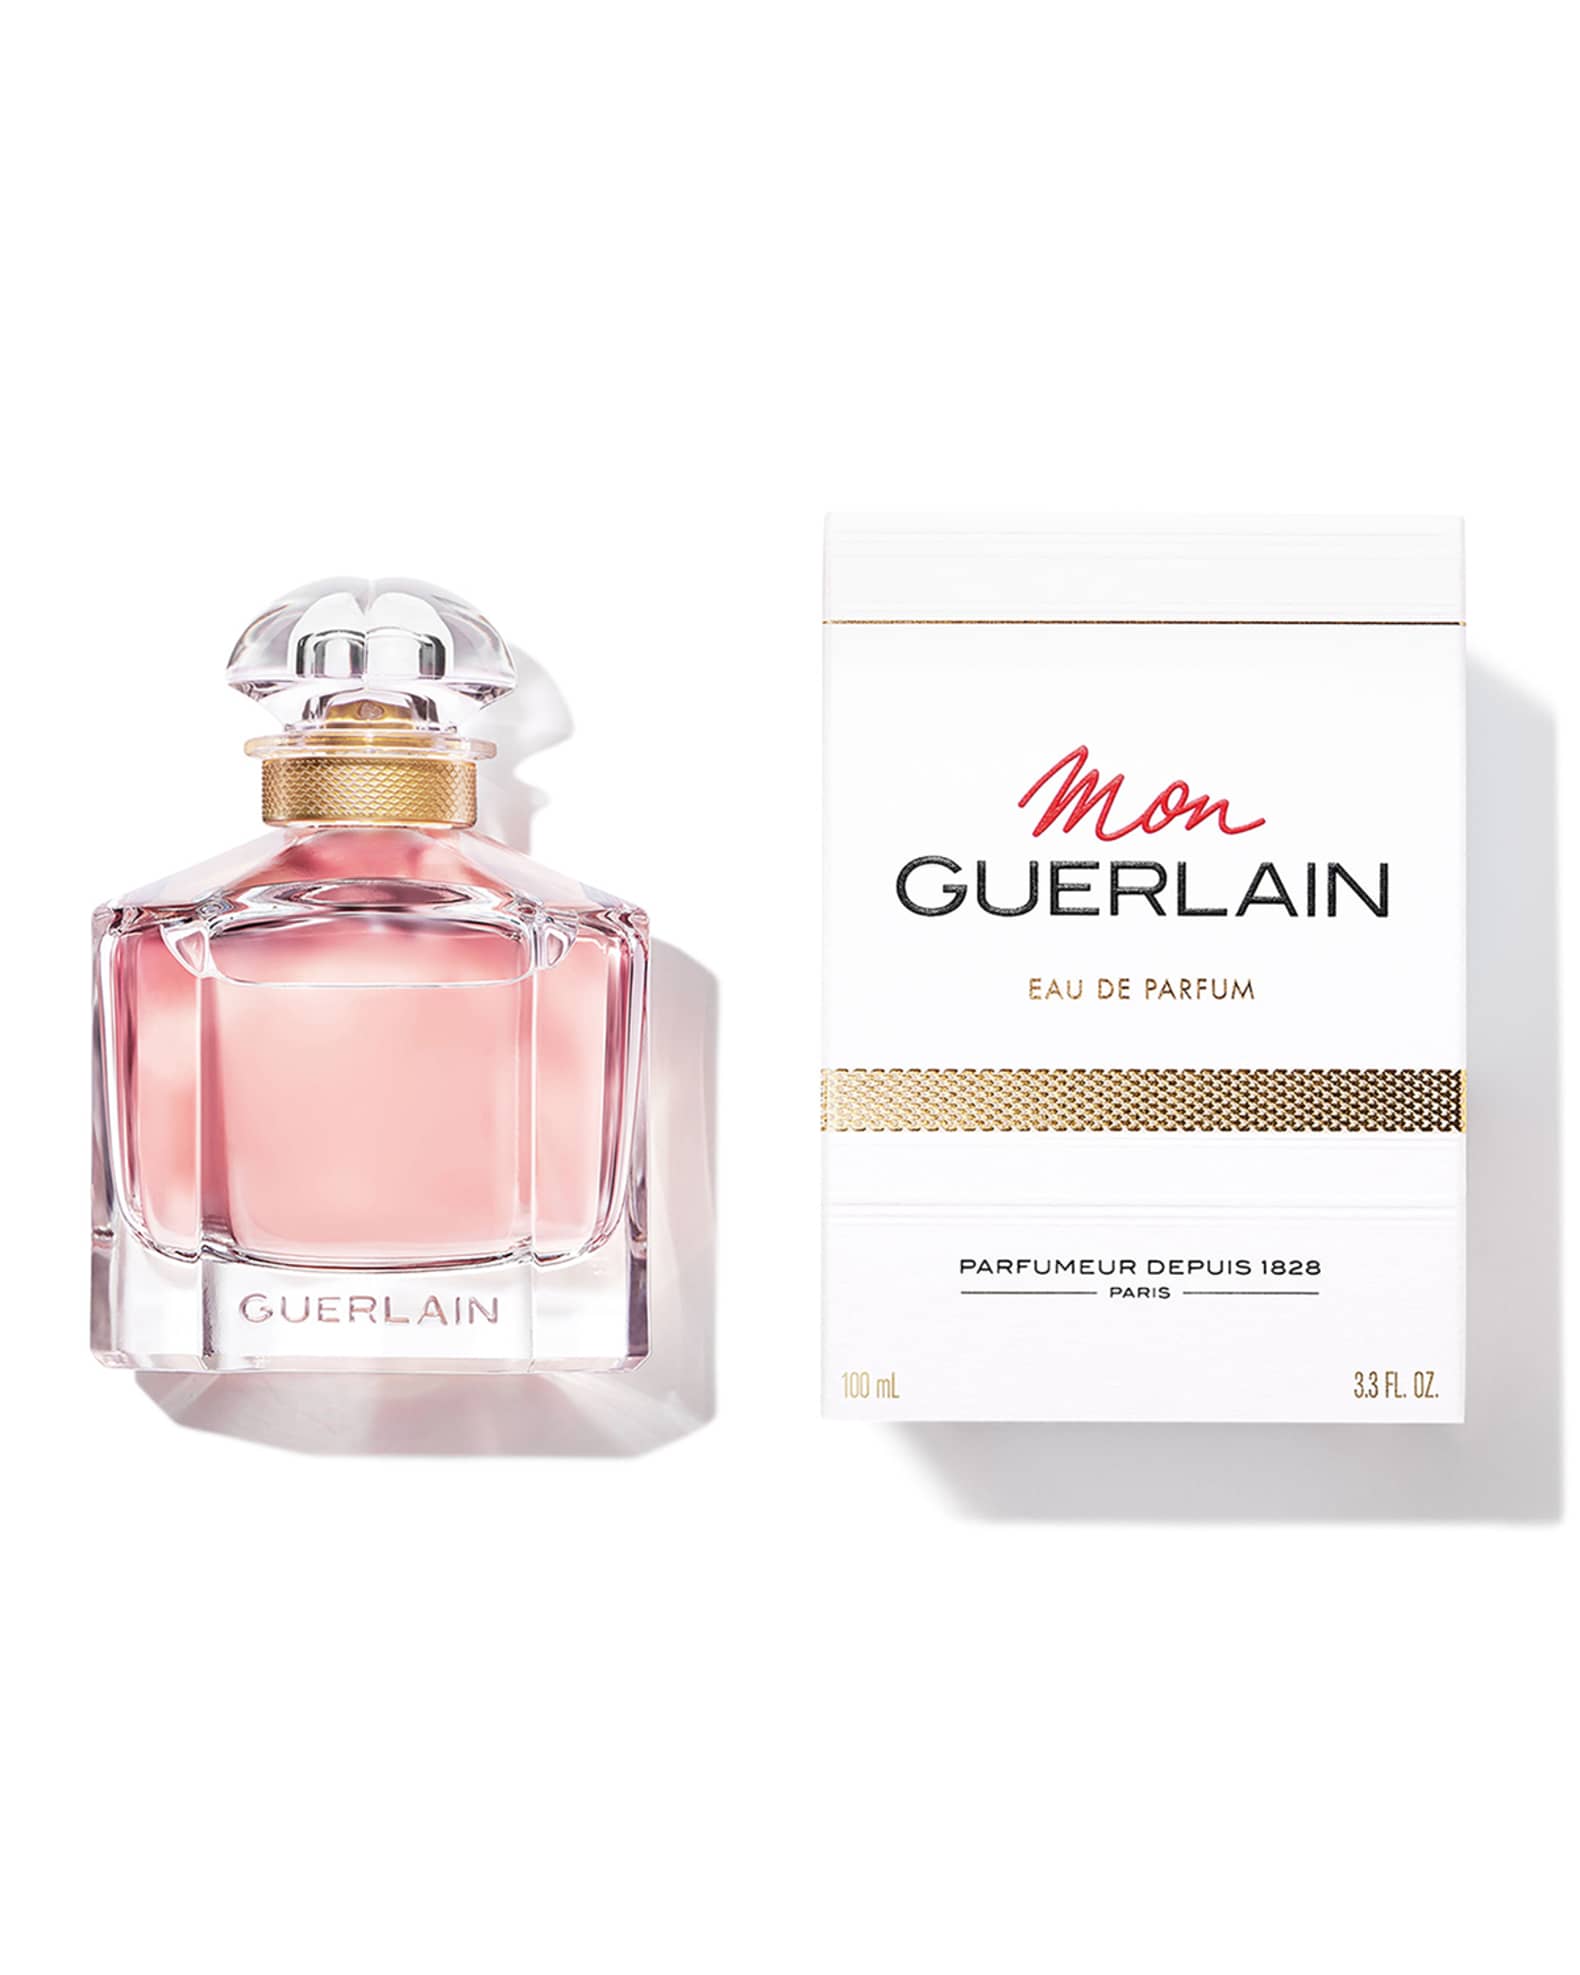 Guerlain Mon Guerlain 3.3 oz Eau de Parfum Spray